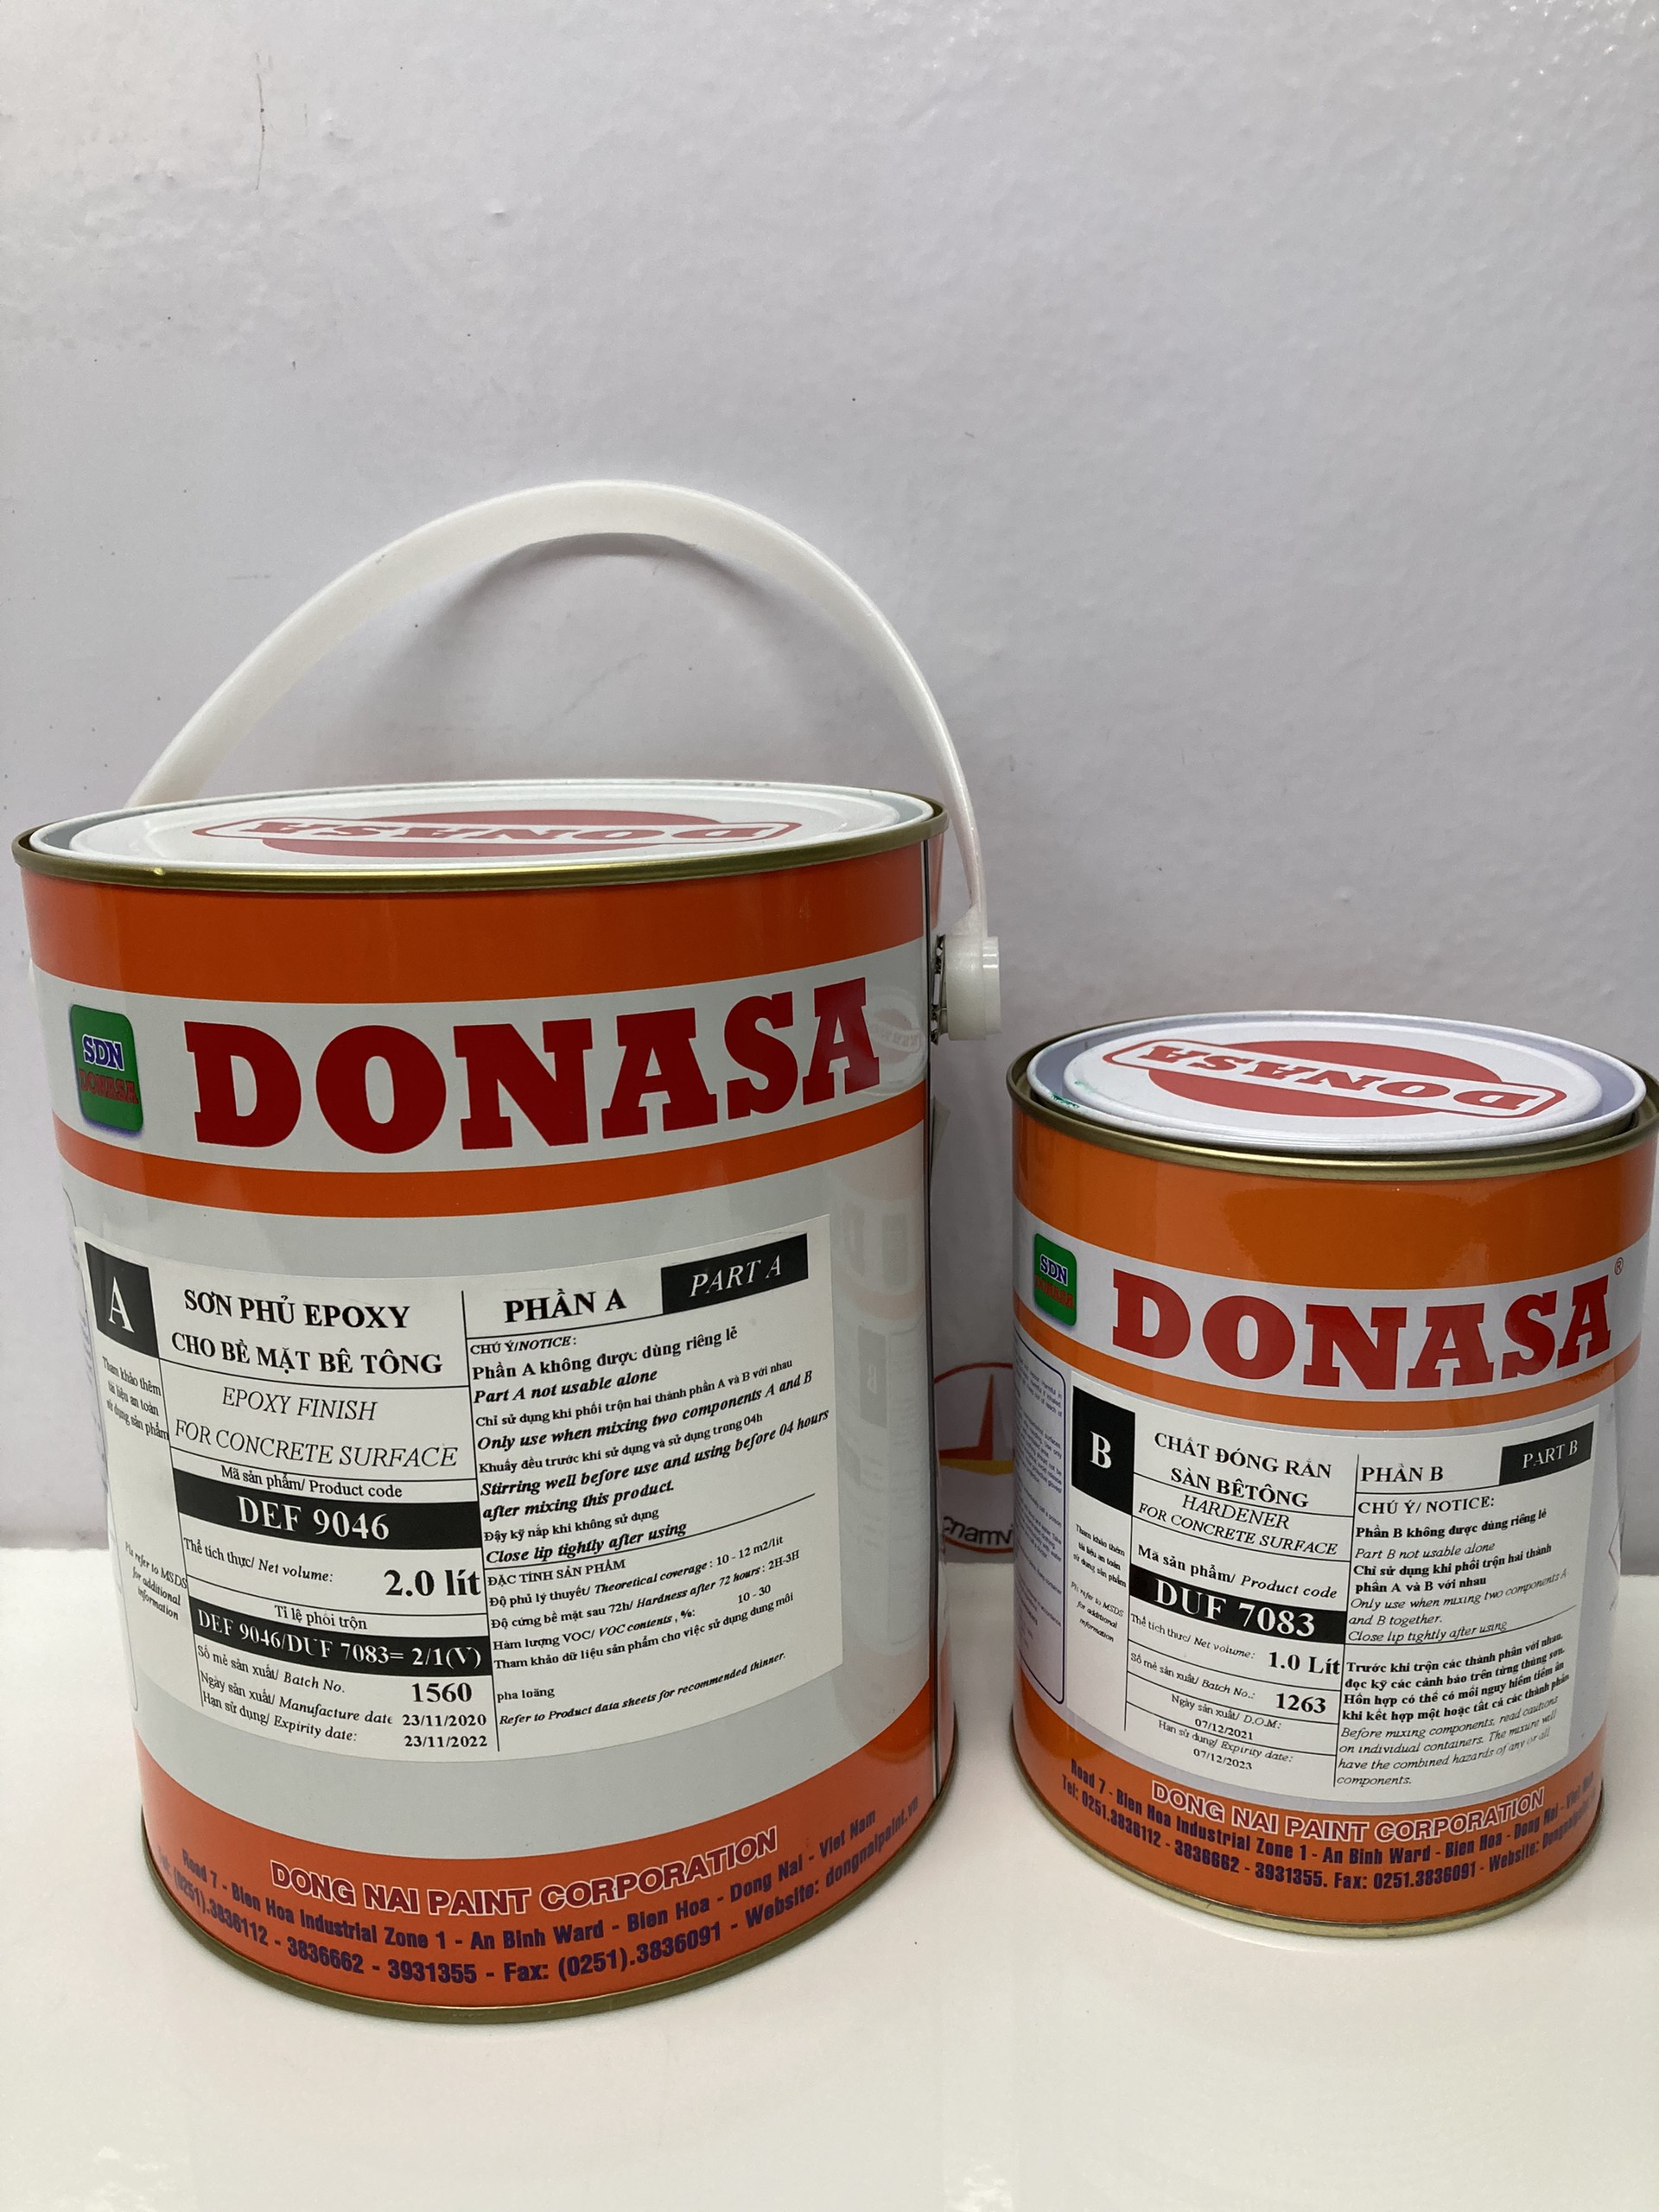 Sơn sàn bê tông Donasa /Floor coating Paint màu xanh lá vàng DEF 9046 3L